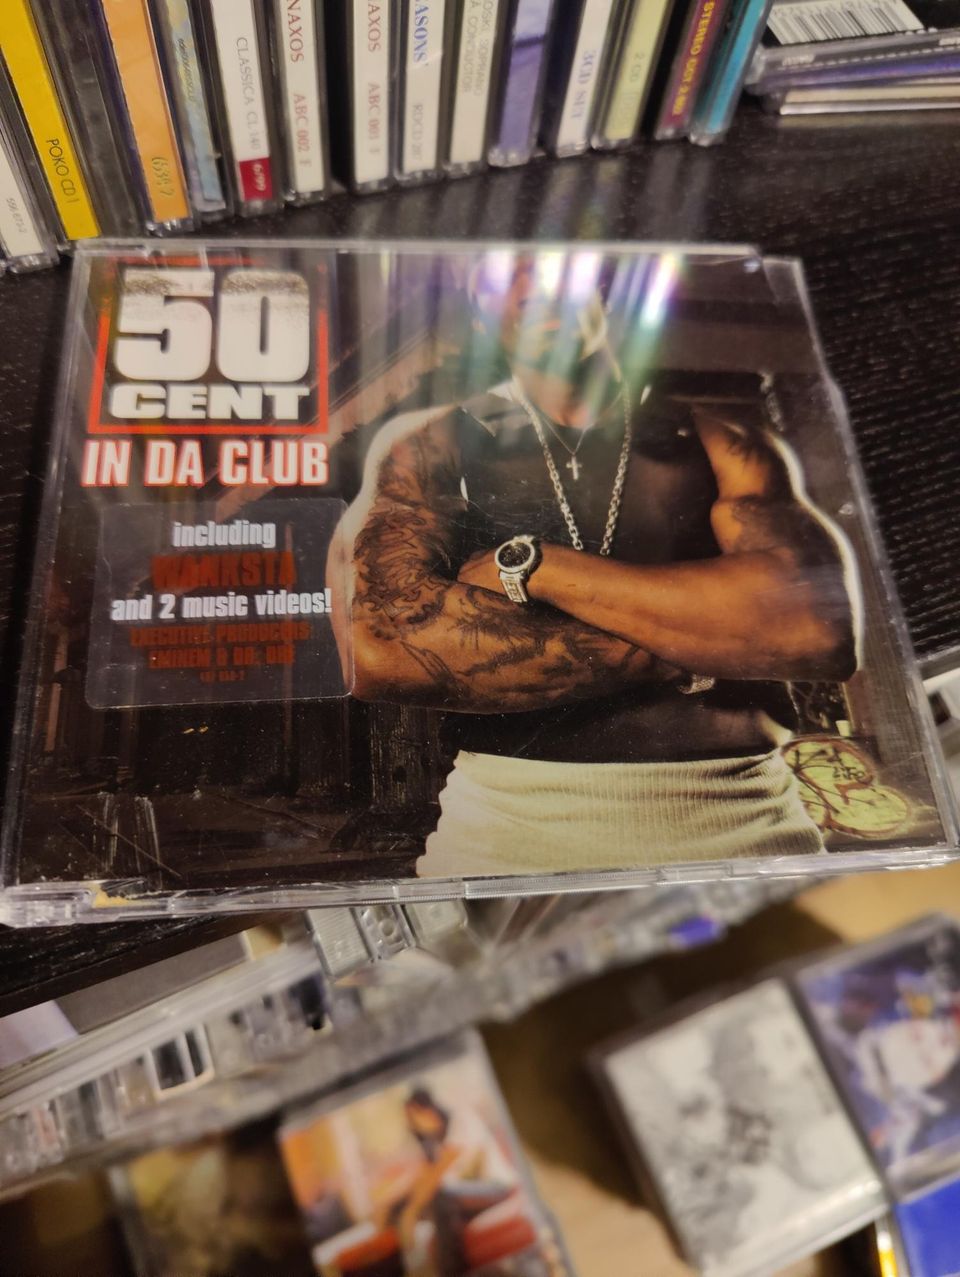 50cent cds